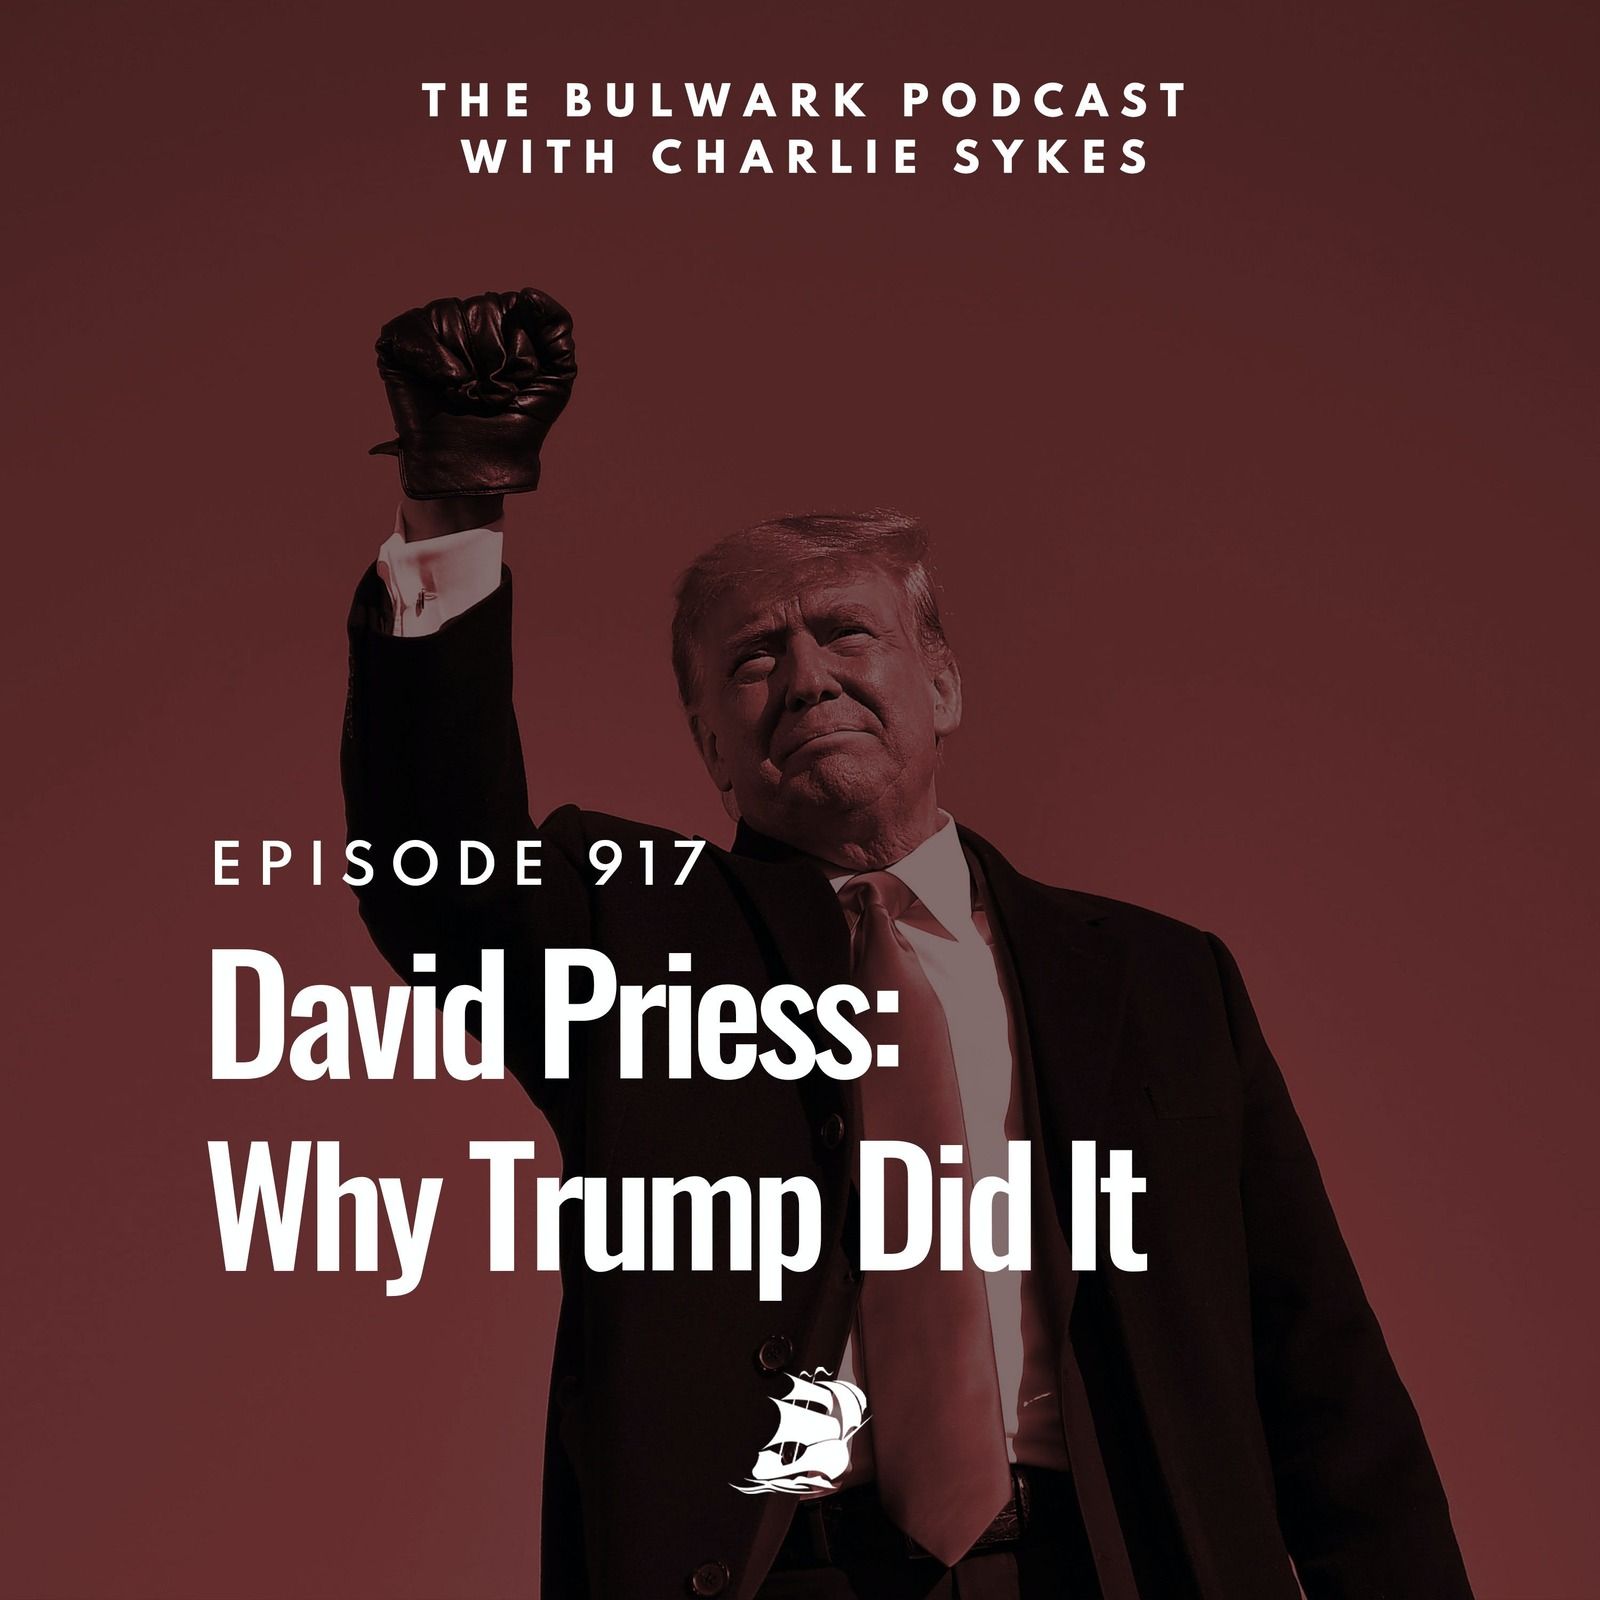 David Priess: Why Trump Did It